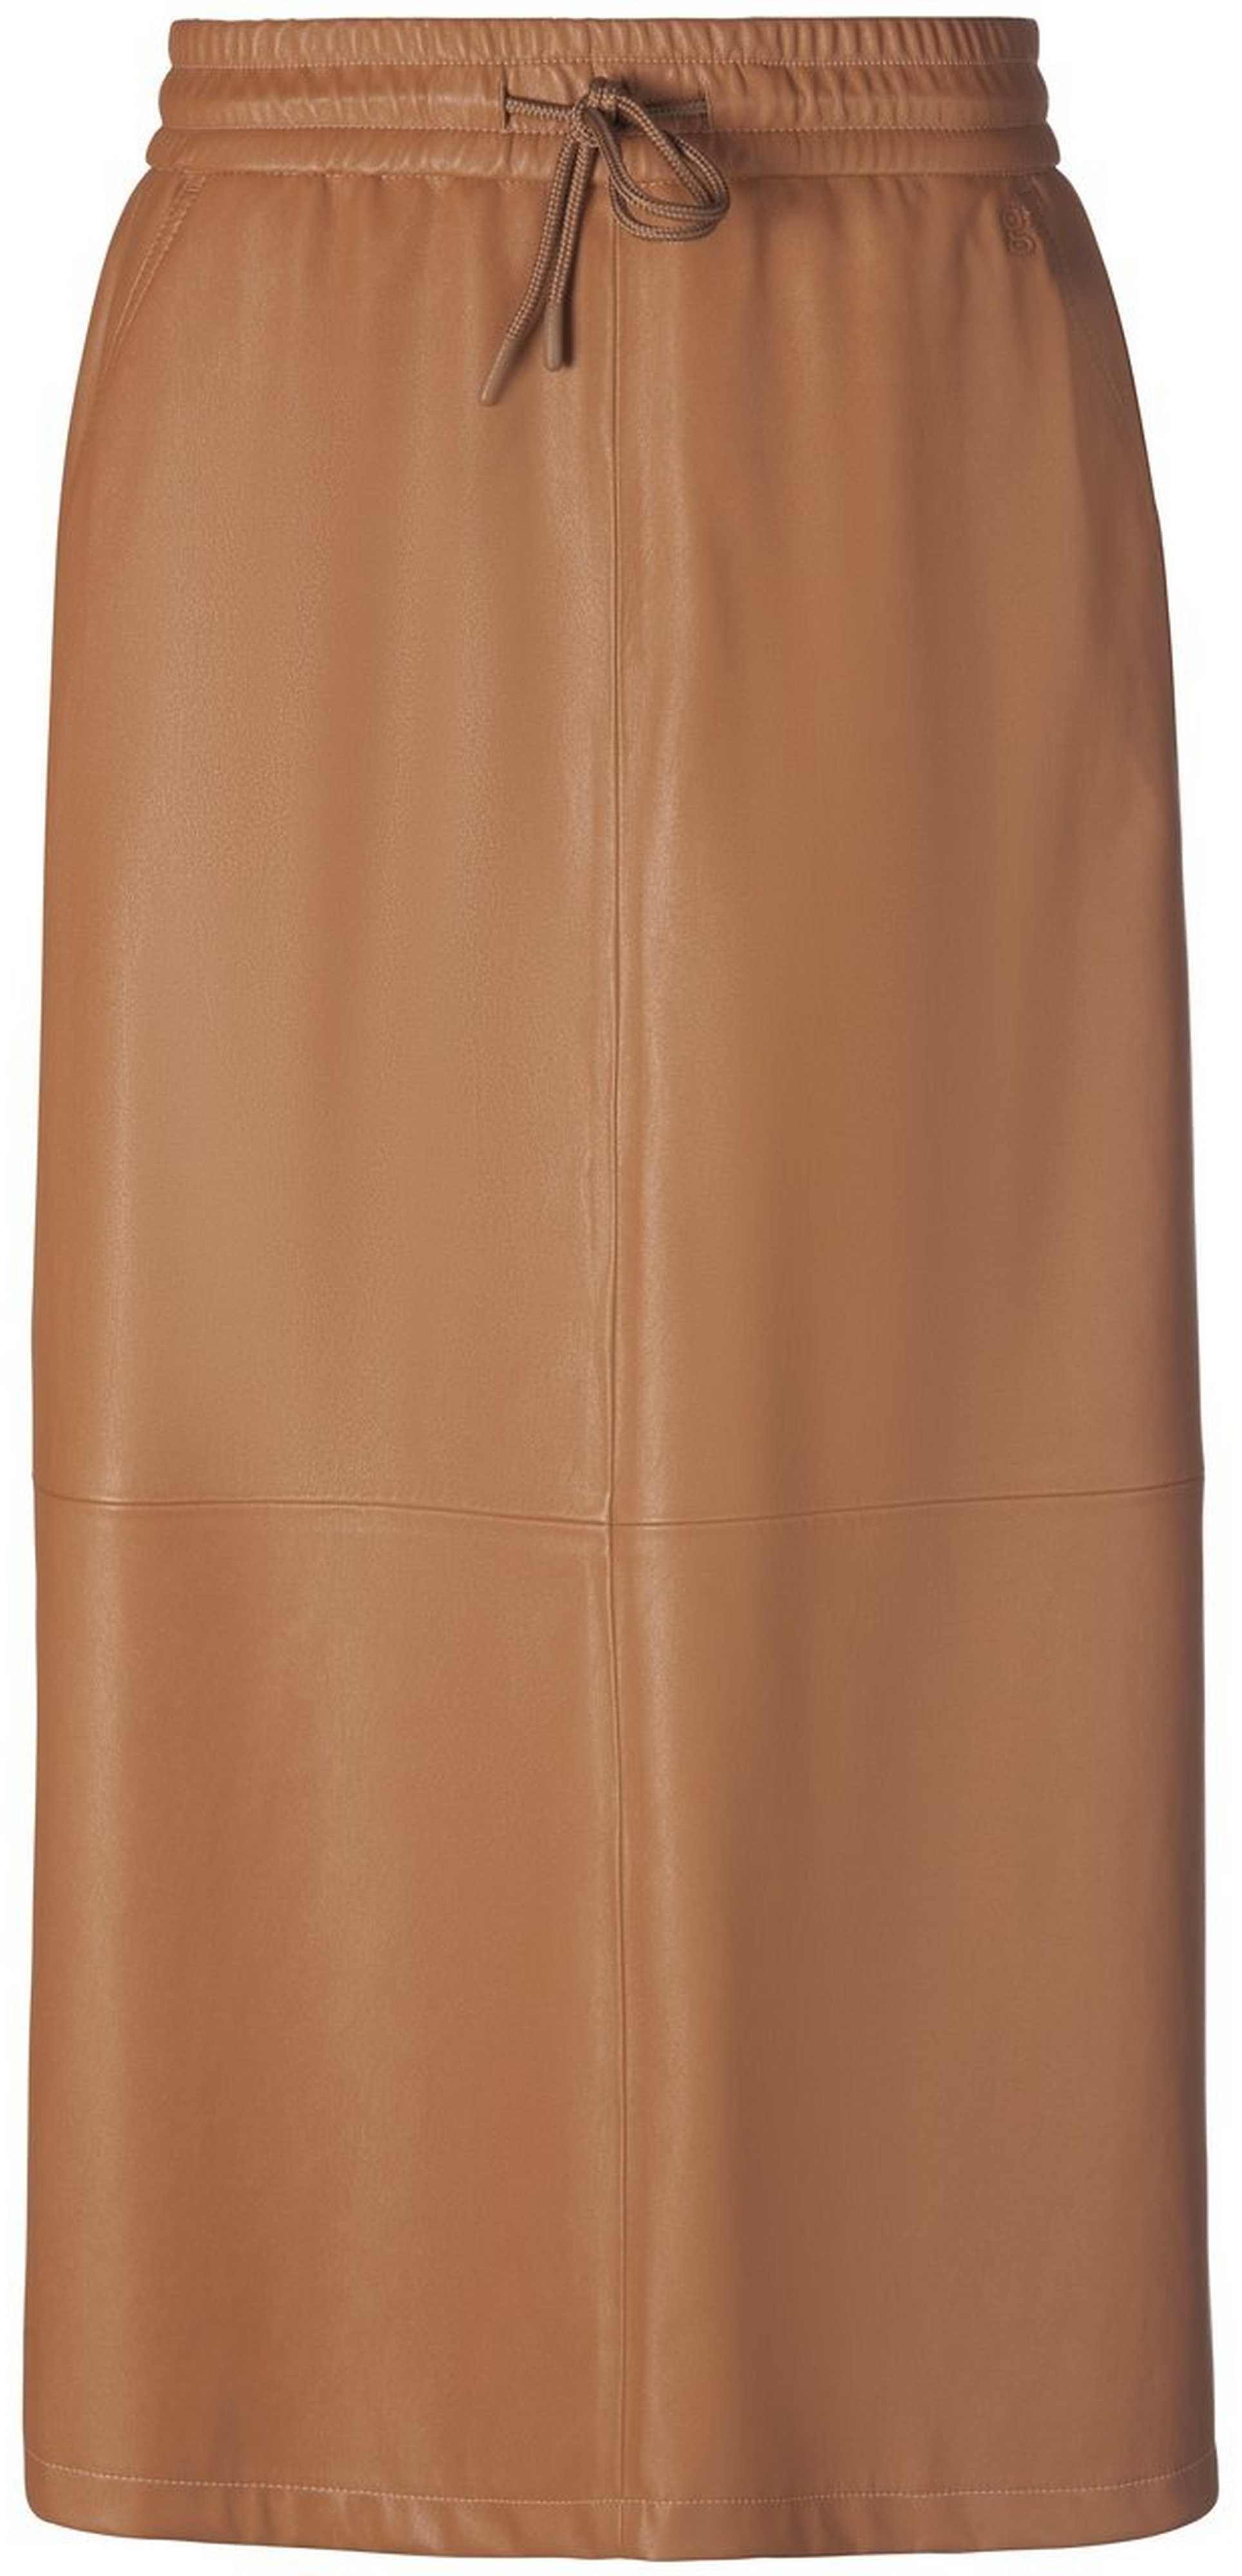 La jupe taille élastiquée  gardeur marron